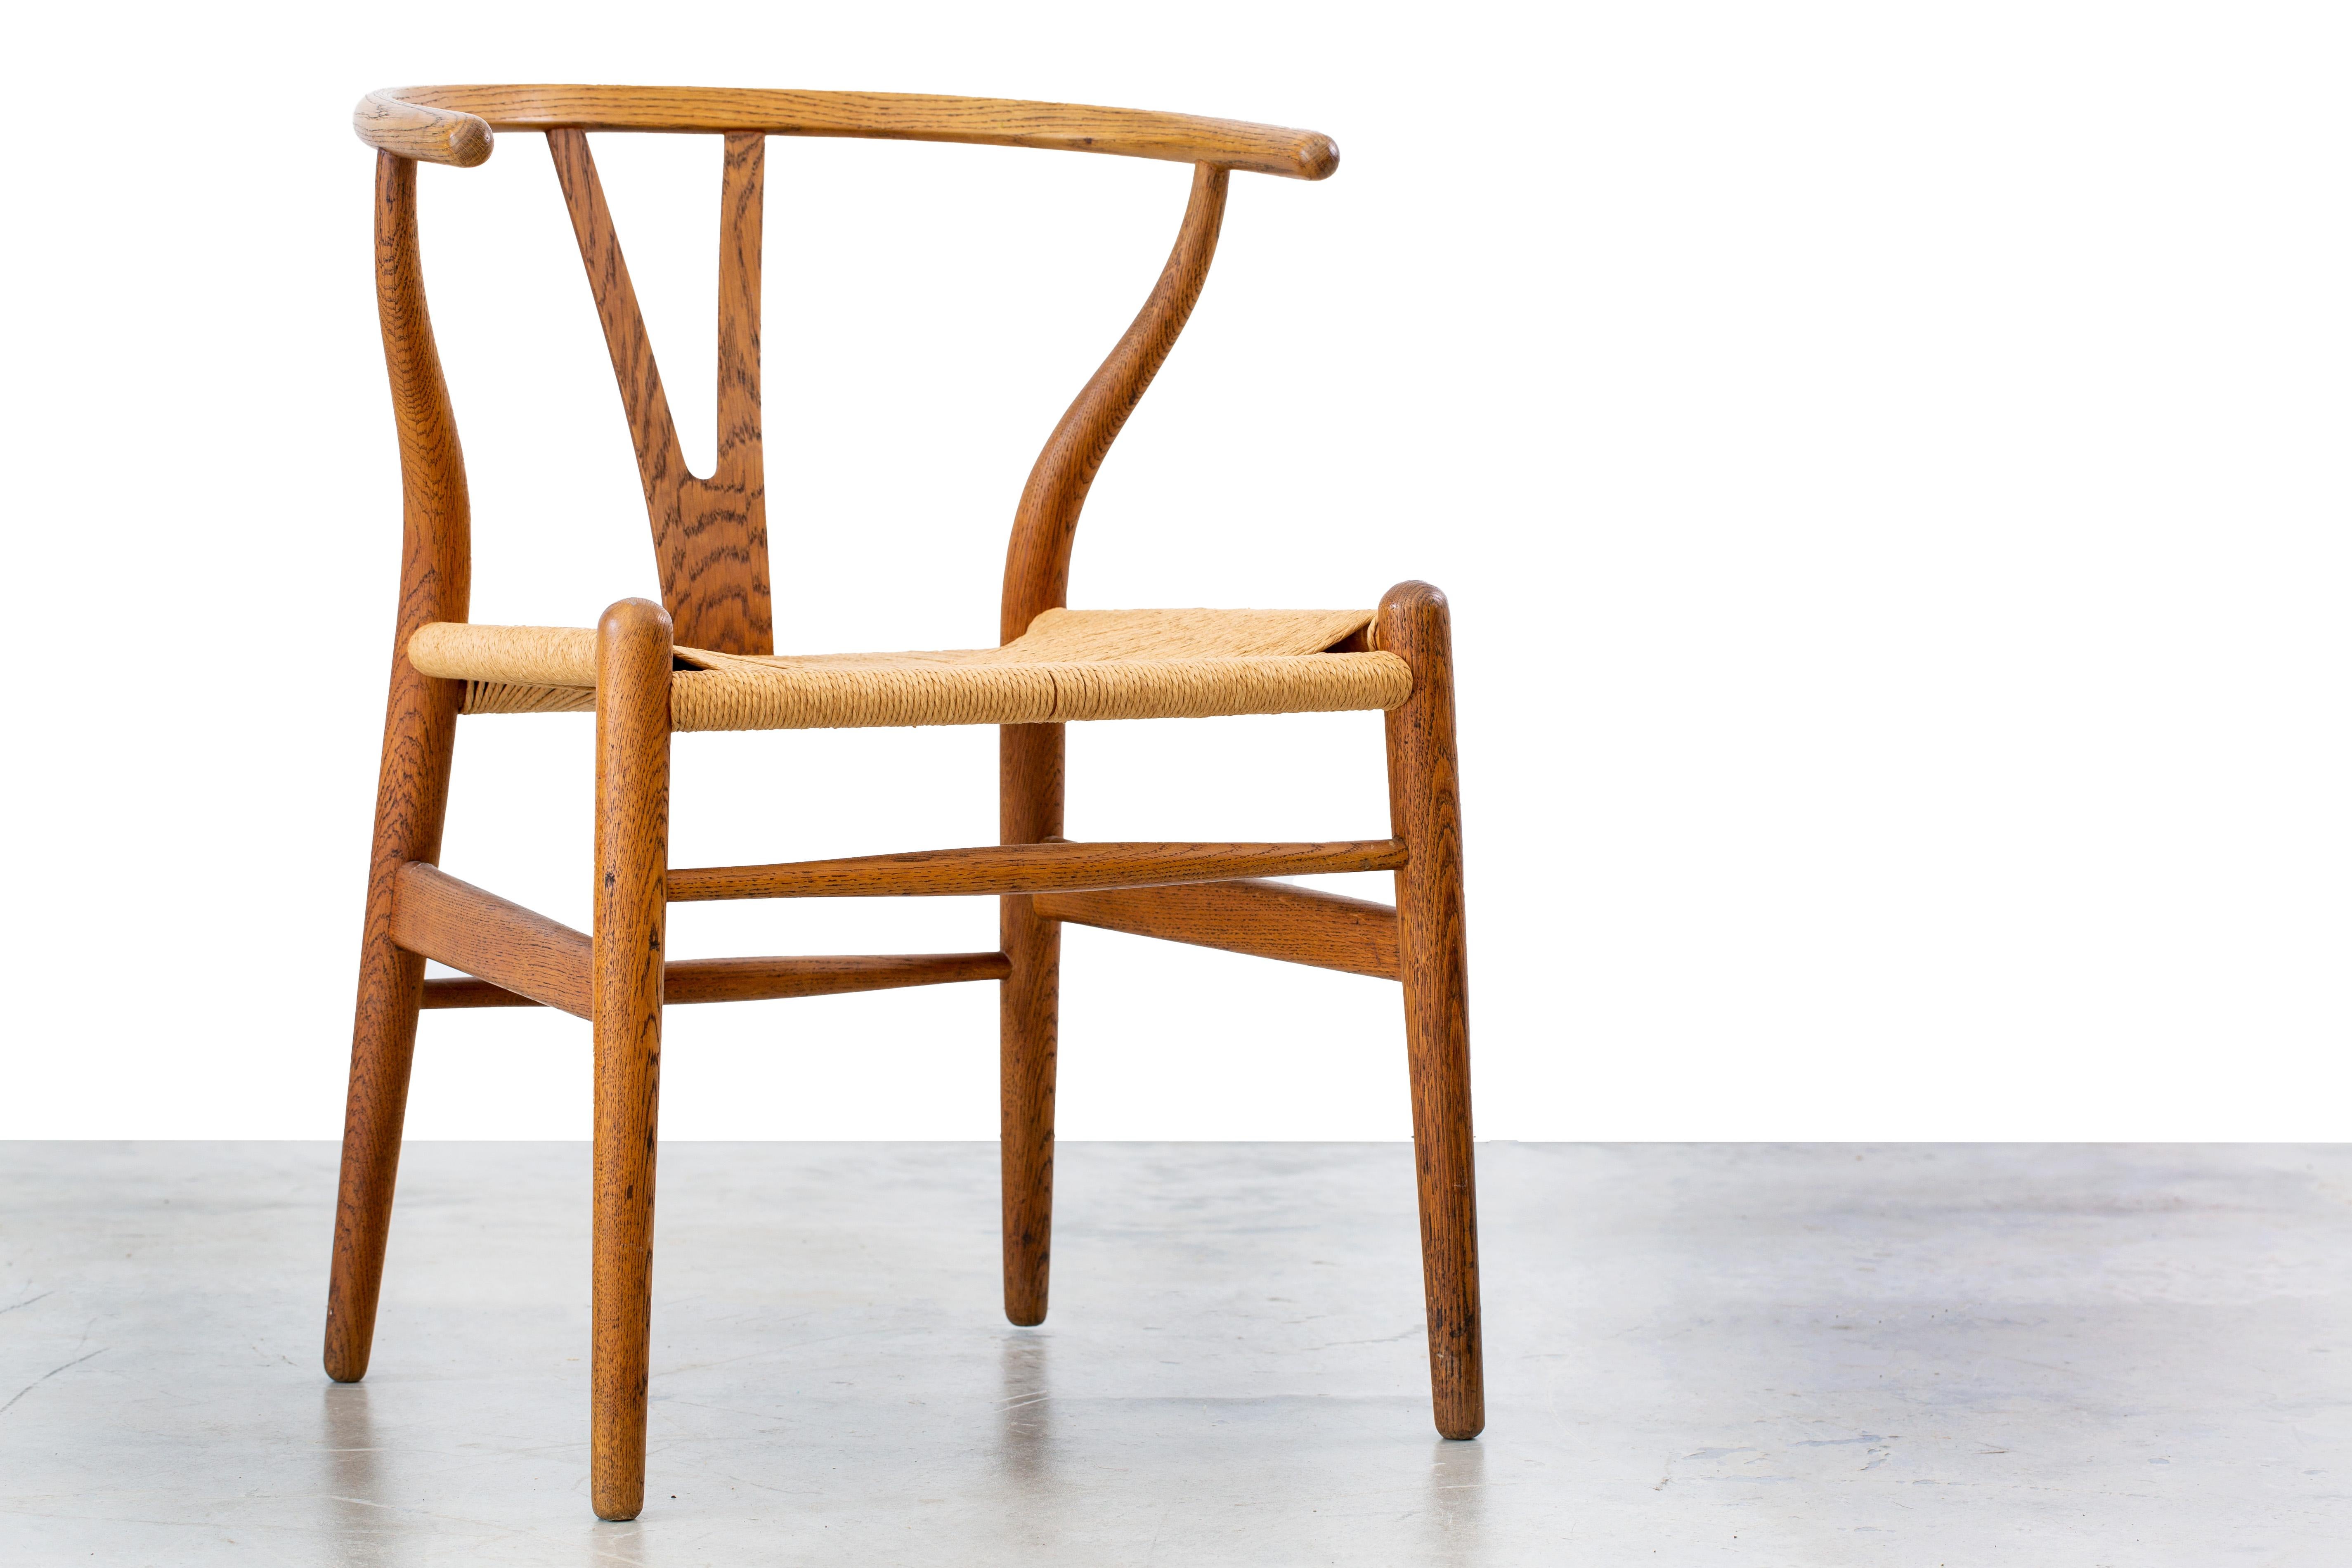 Der ikonische Querlenker-Stuhl, Modellnummer CH24, entworfen von Hans Wegner und importiert von Illums Bolighus.  Dieses Exemplar ist eine Zeitkapsel, mit originalem Eichenholz und Papierkordelsitz, alles in fantastischem Zustand.  Dieser Stuhl